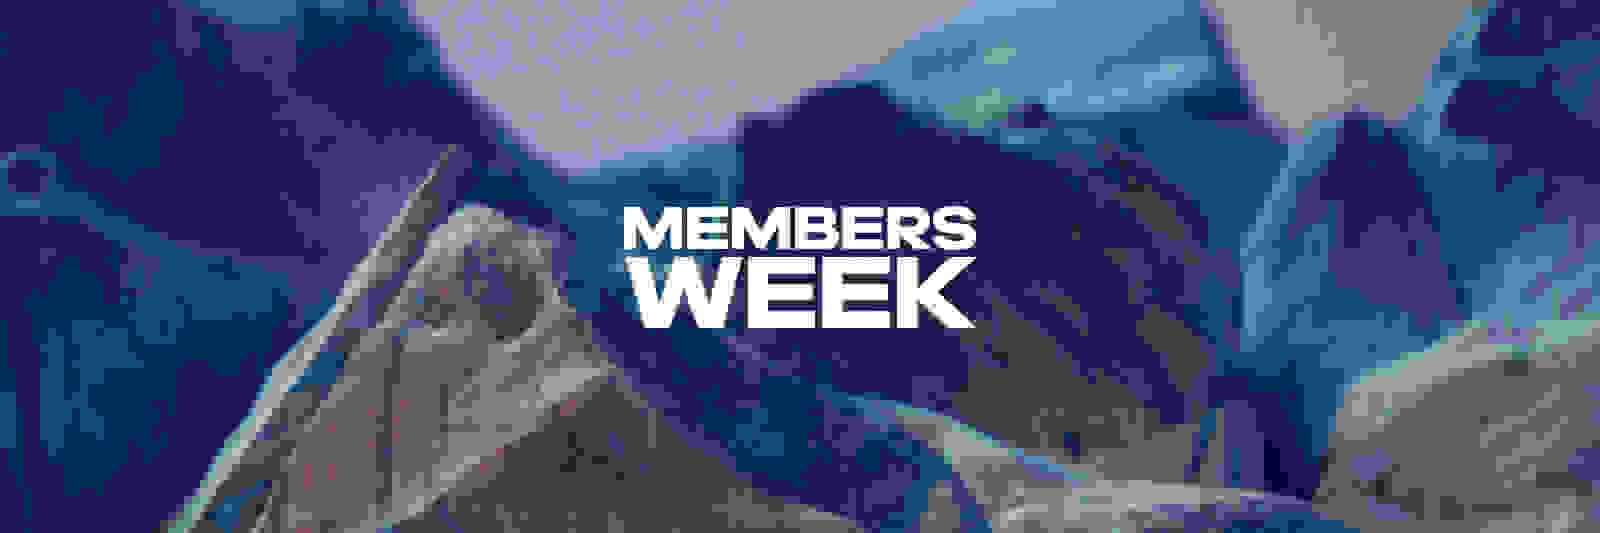 Member's Week Coming